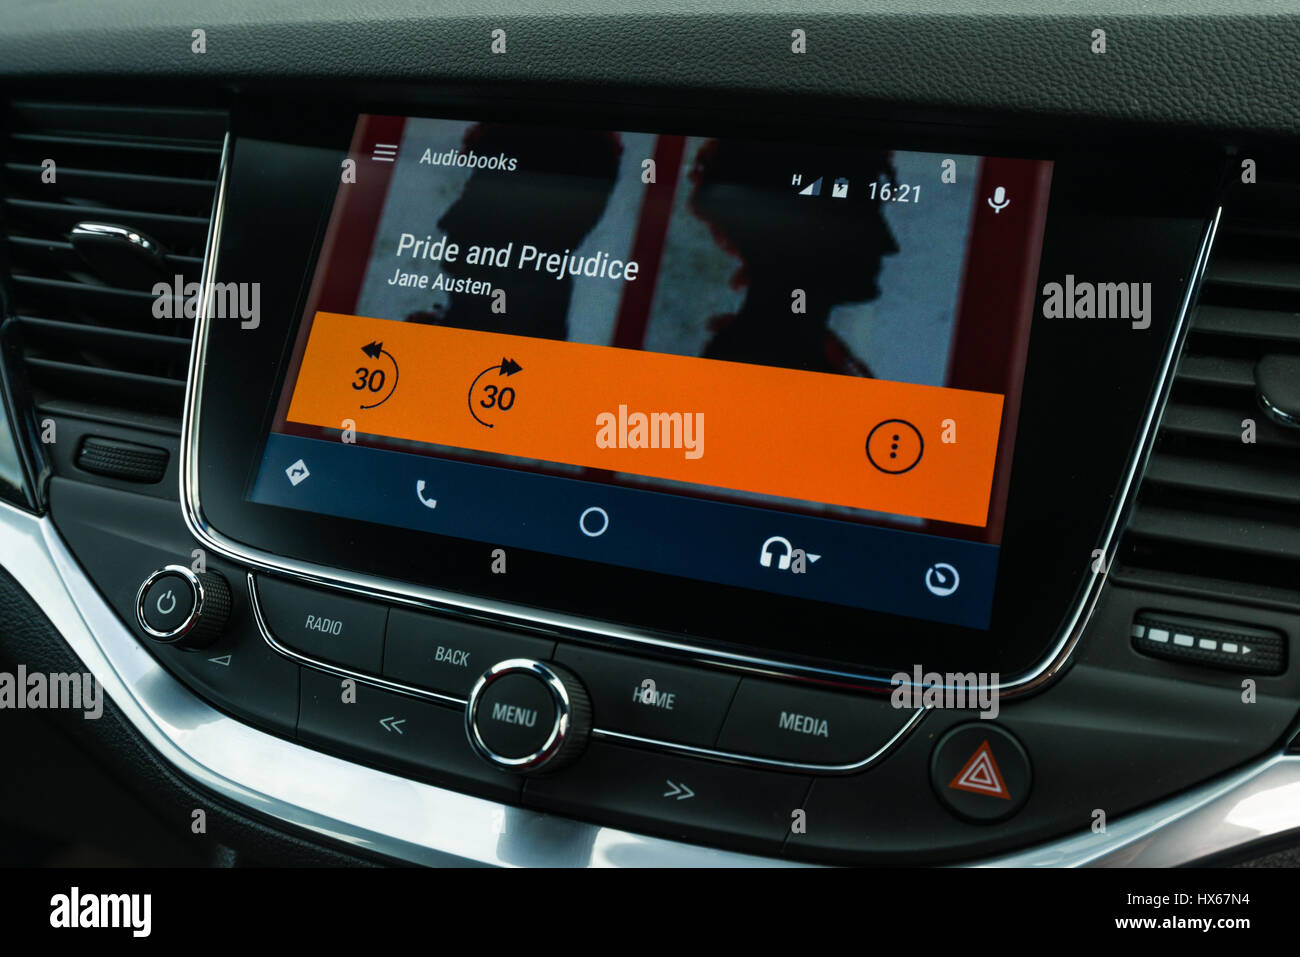 Android Auto interfaz de navegación del vehículo con libros de audio Foto de stock